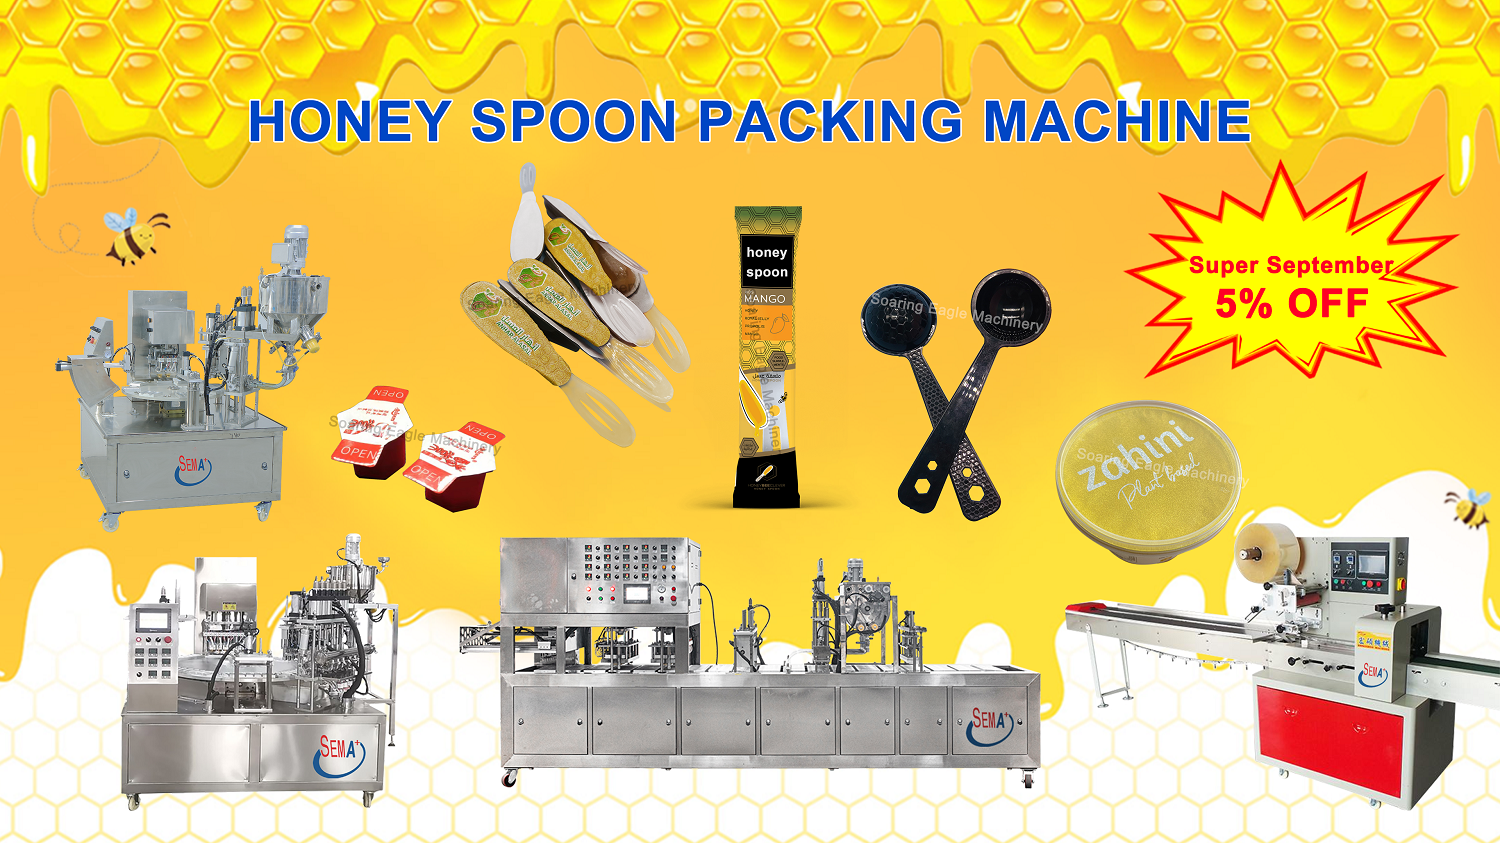 Honey spoon packing machine